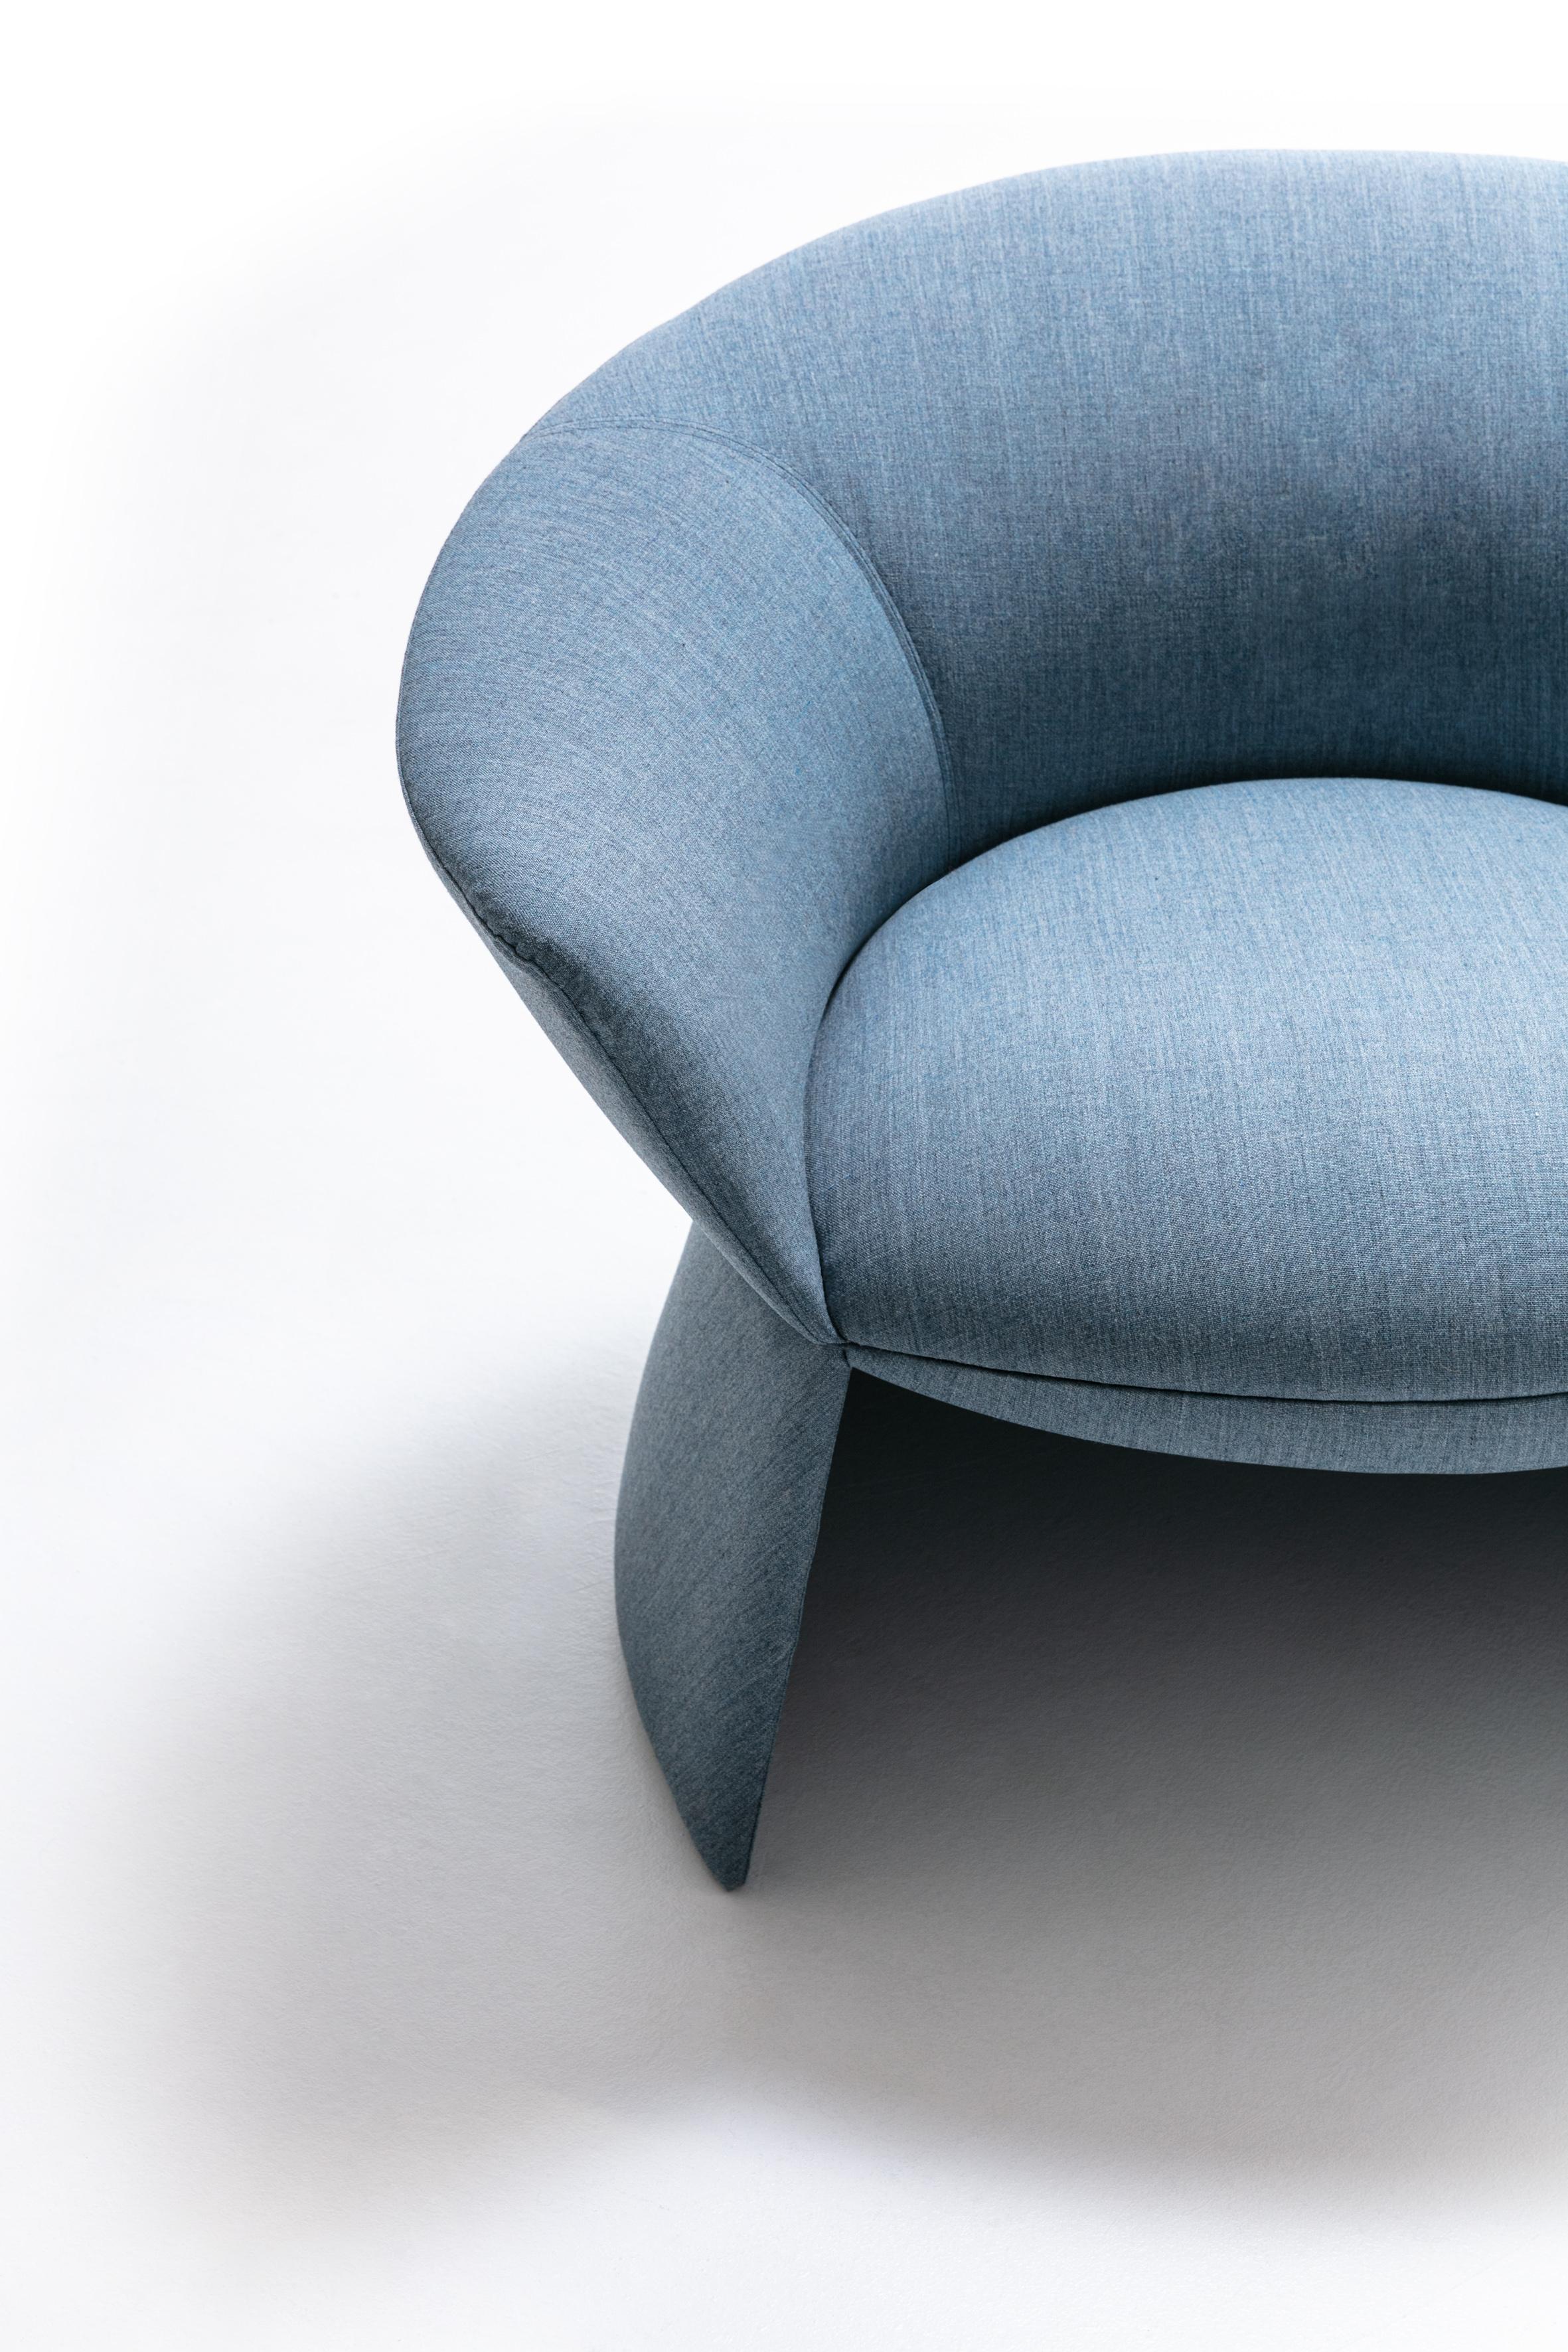 Grâce à une structure abondante et généreuse, le fauteuil Swale évoque des scénarios de conversation détendus pour les environnements résidentiels et contractuels. Le confort du siège est assuré par ses formes larges et enveloppantes, reproduites de